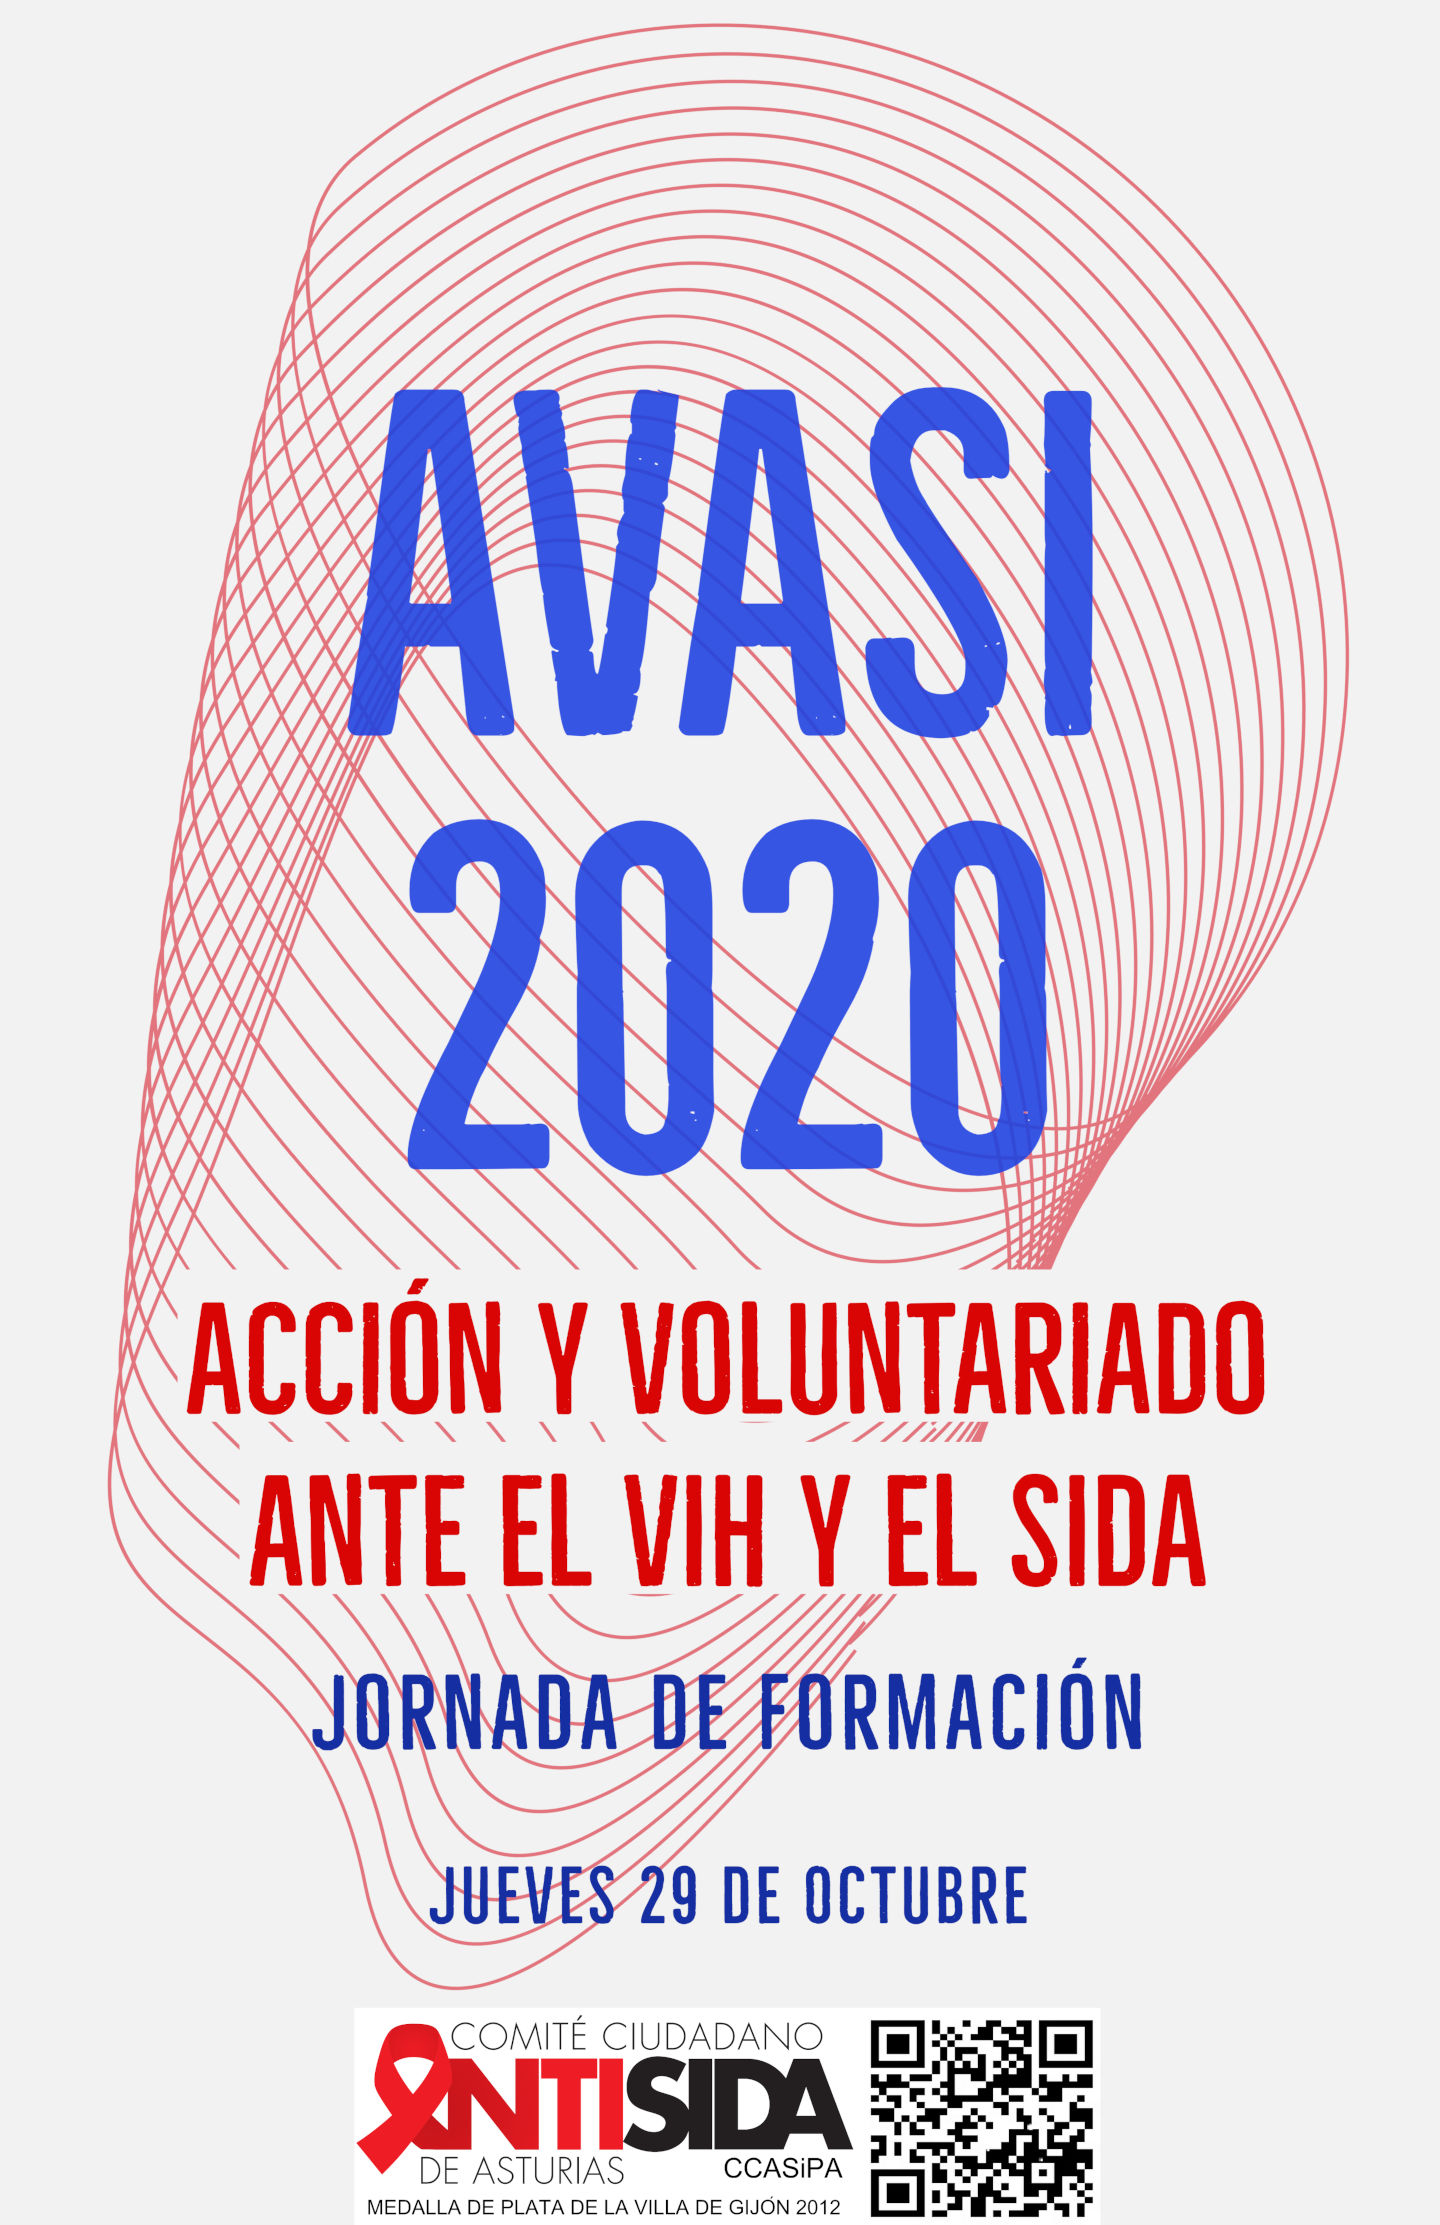 # AVASI 2020 Acción y Voluntariado Ante el Sida